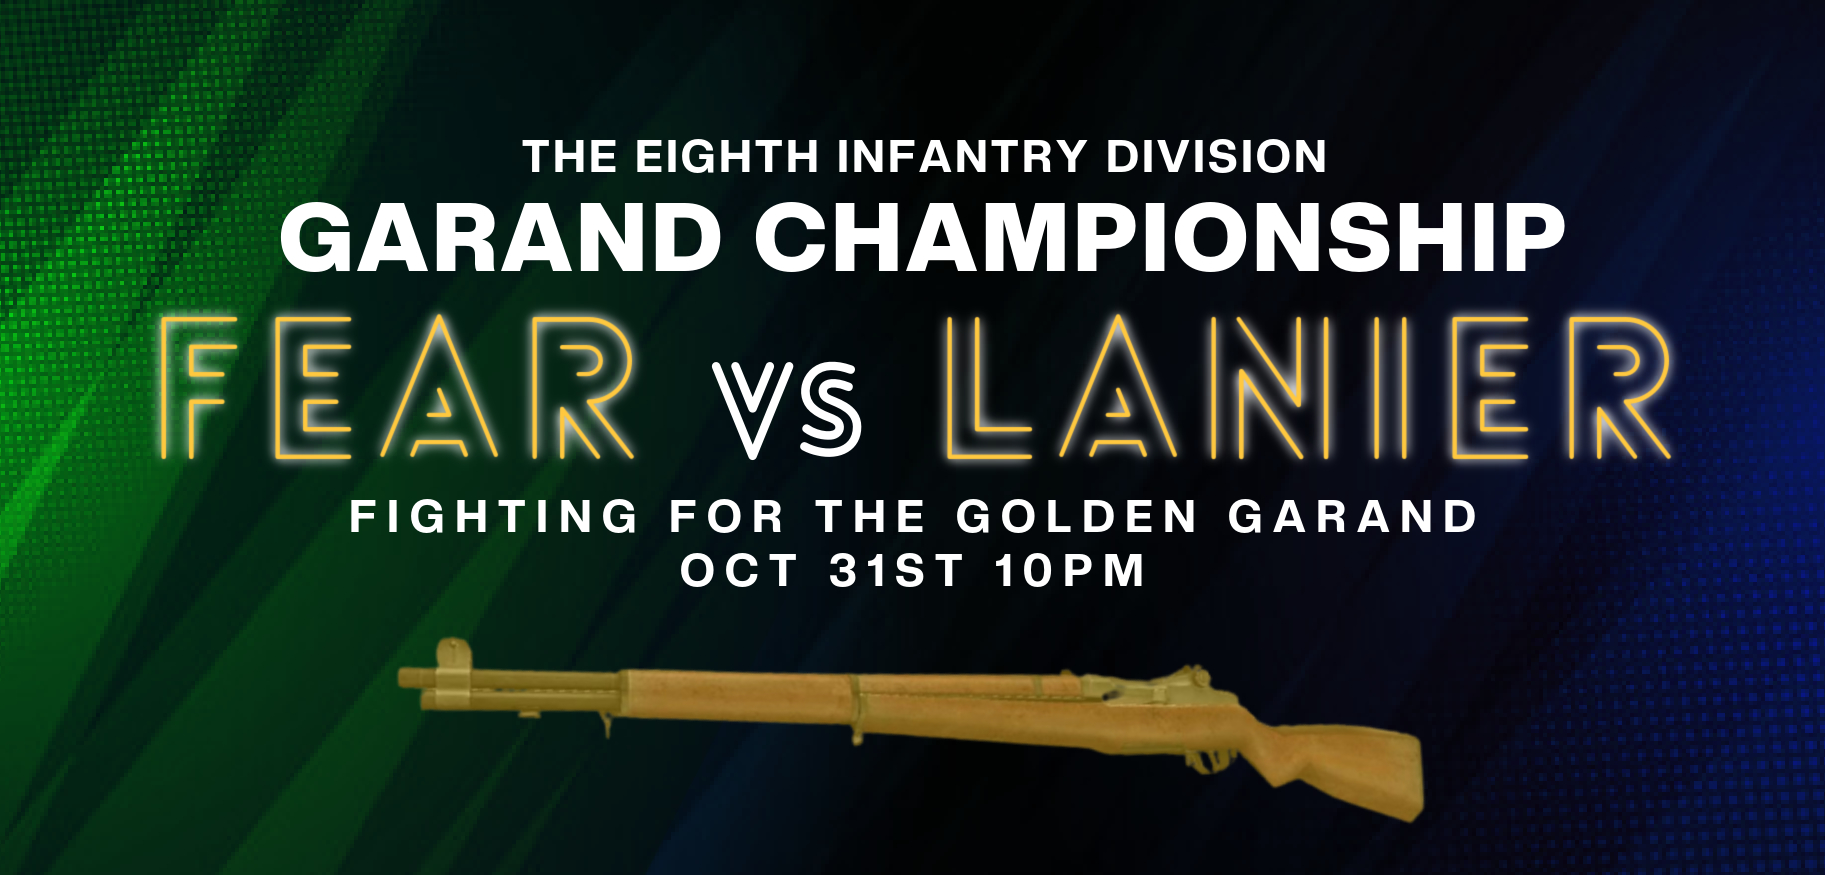 The Golden Garand - Lanier vs. Fear